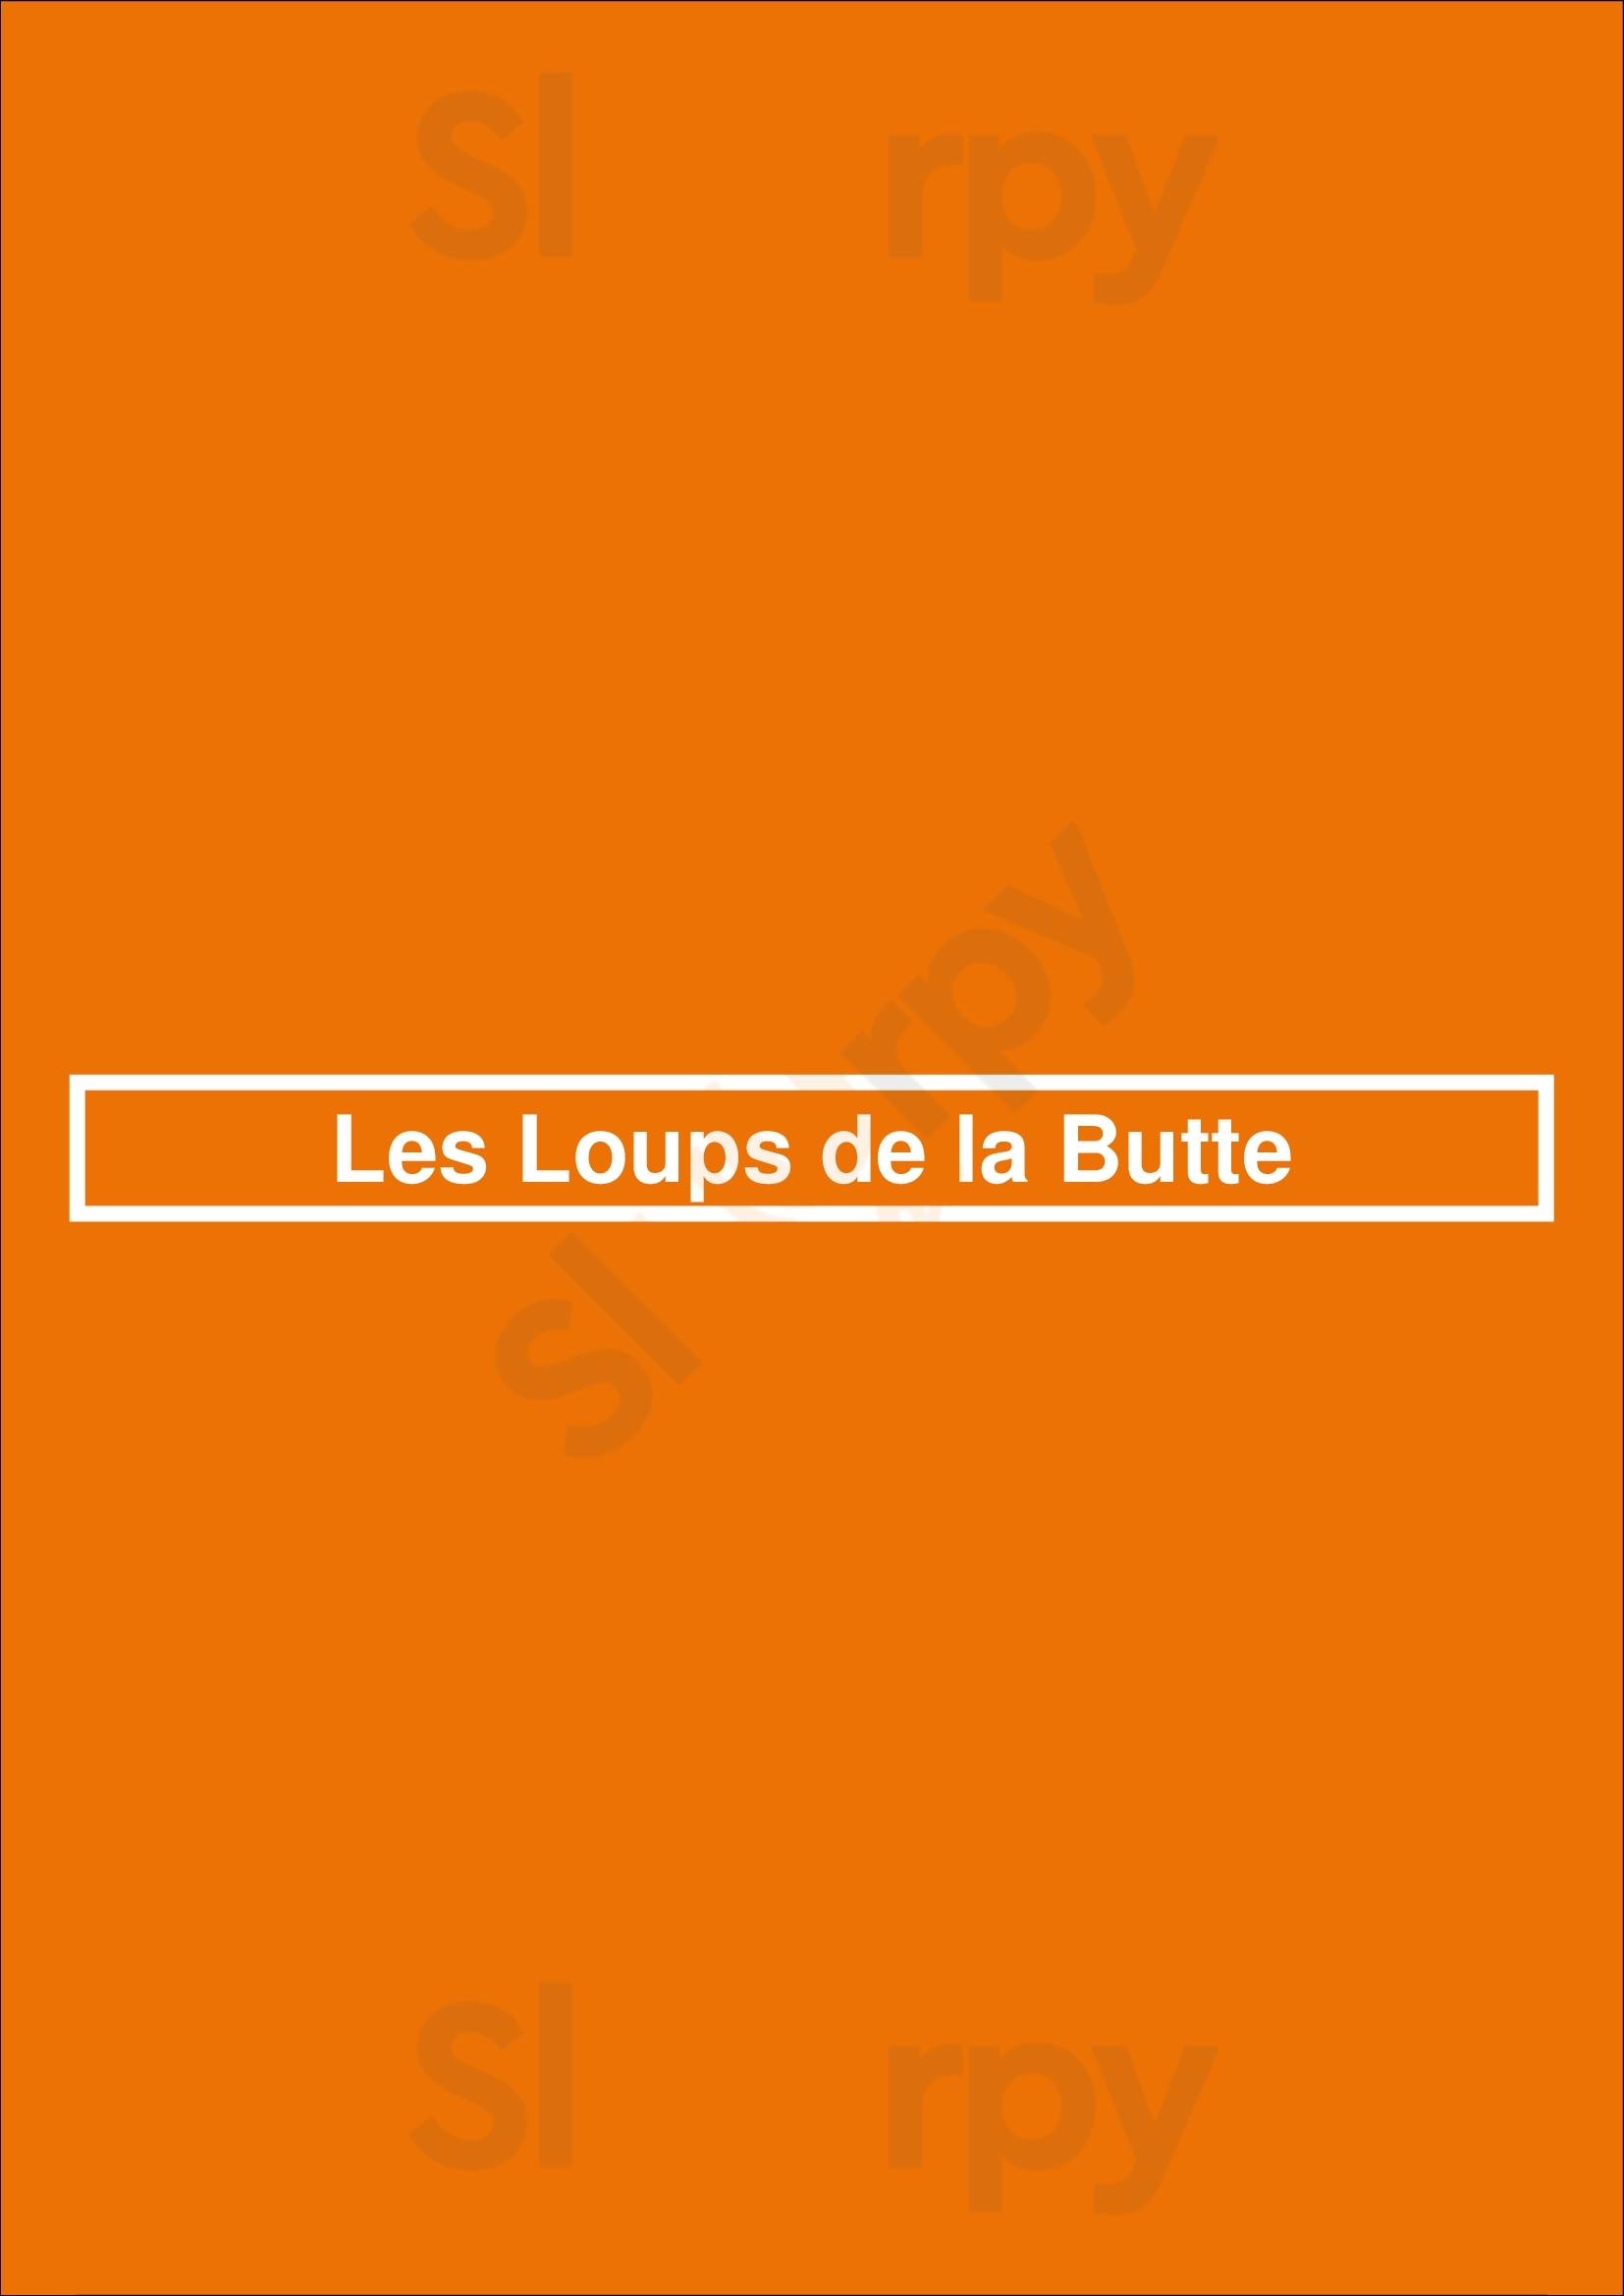 Les Loups De La Butte Paris Menu - 1